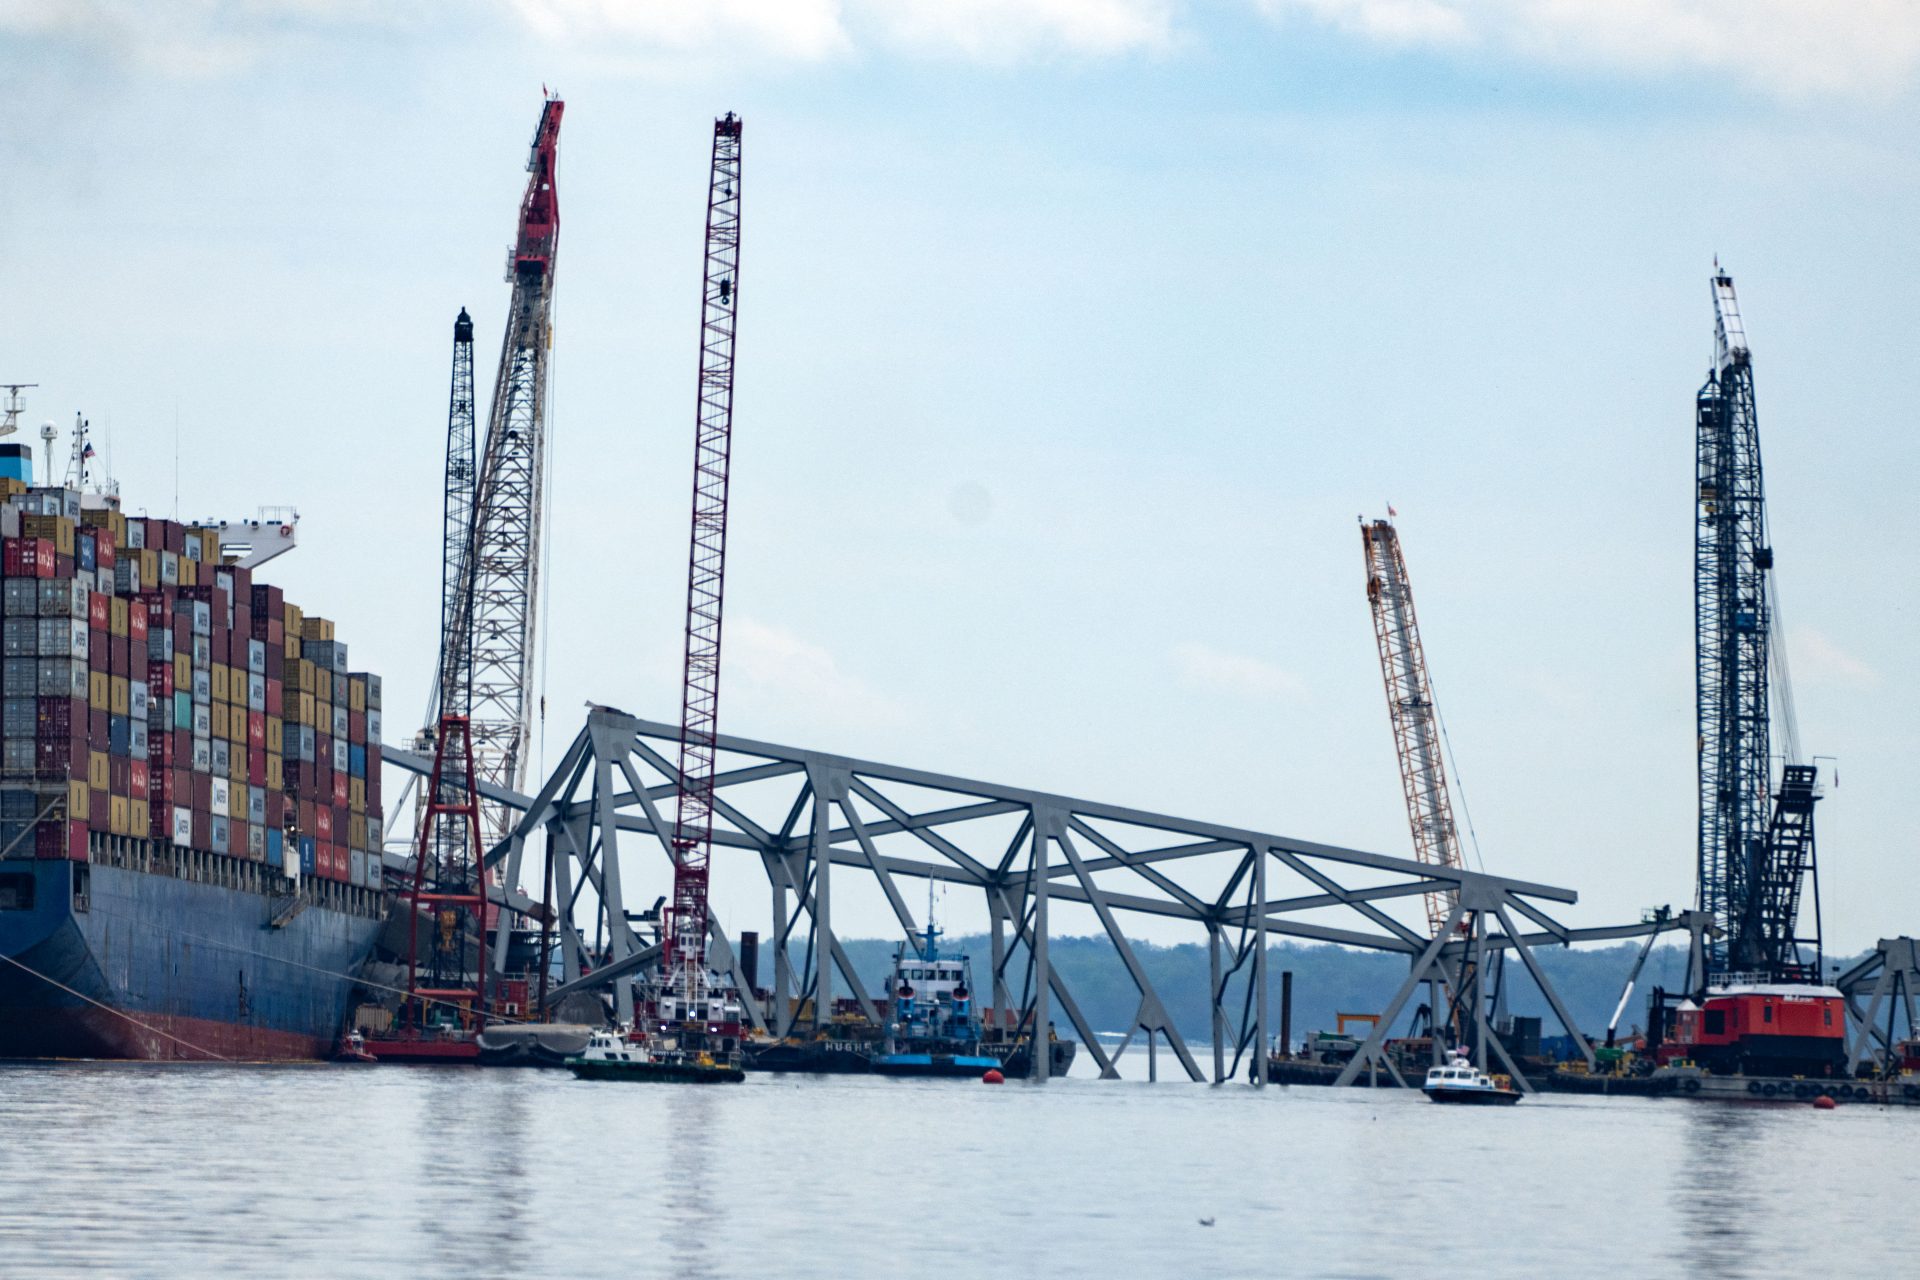 Puente de Baltimore: Siguen las labores de remoción de contenedores del barco que chocó